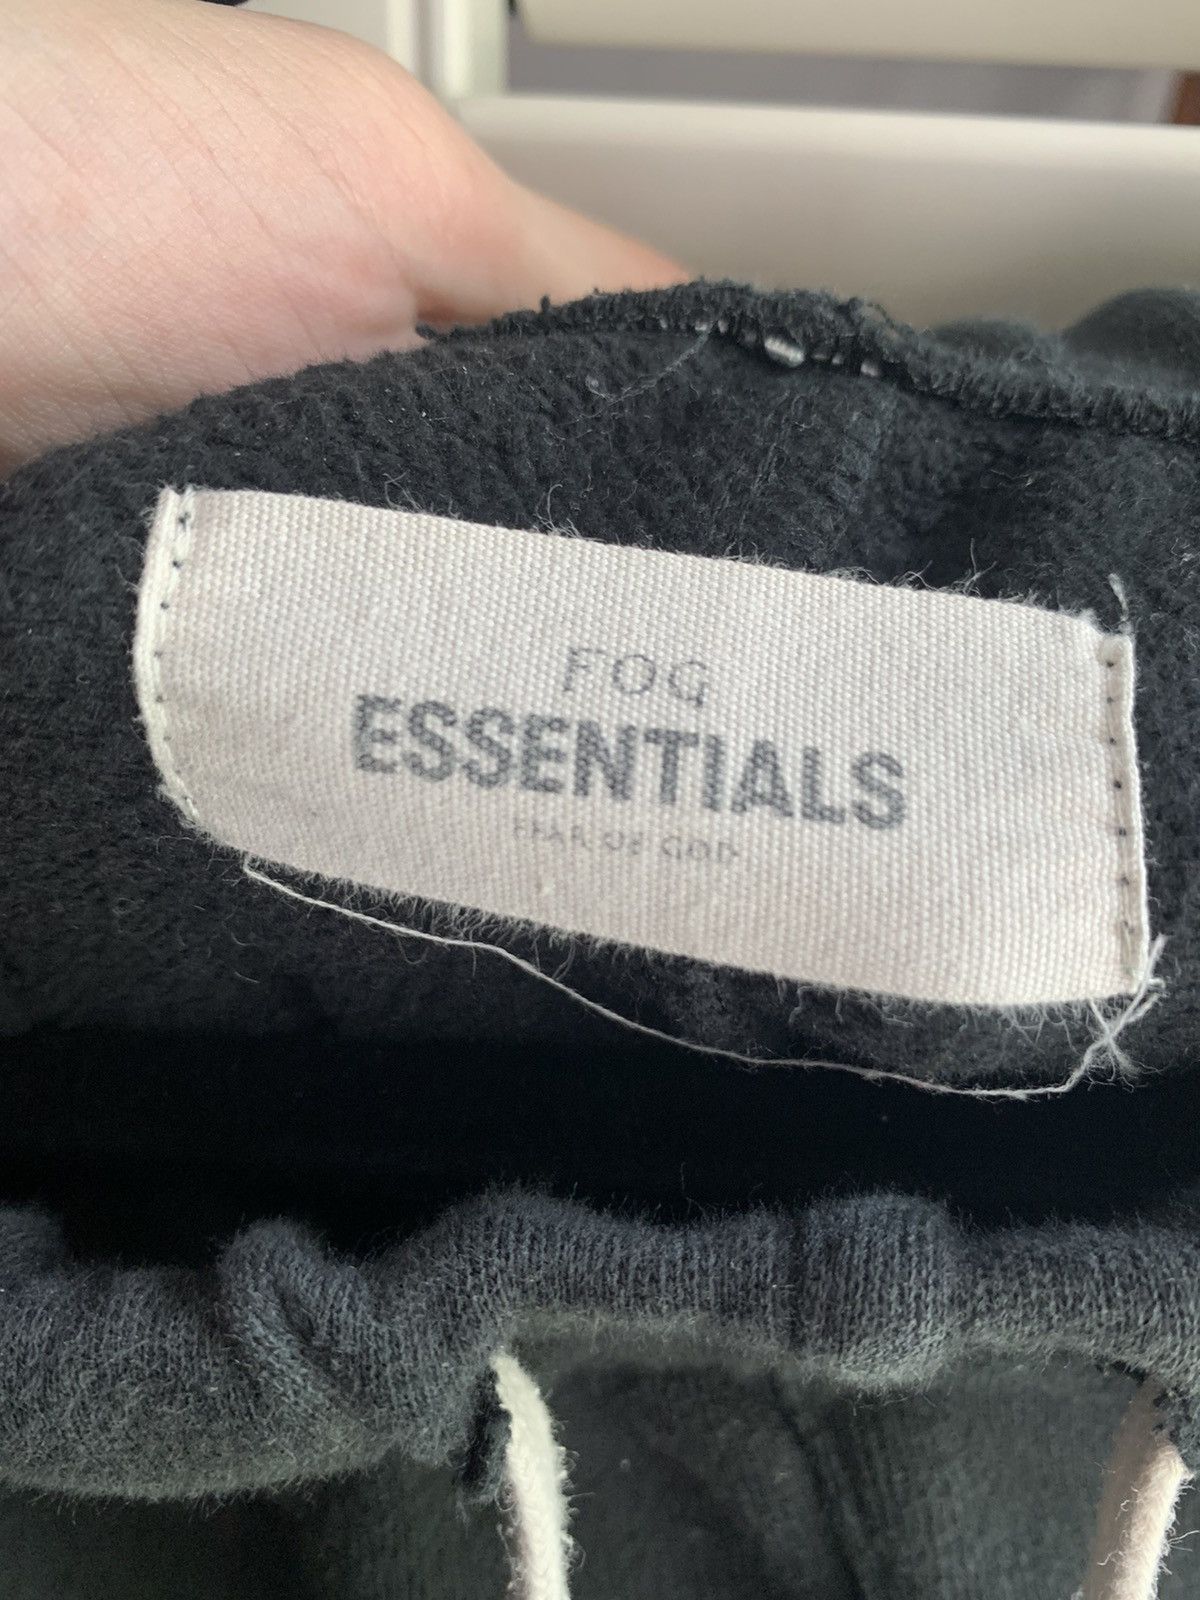 Pacsun FOG x Pacsun Essentials Black Sweatpants Size US 30 / EU 46 - 5 Thumbnail